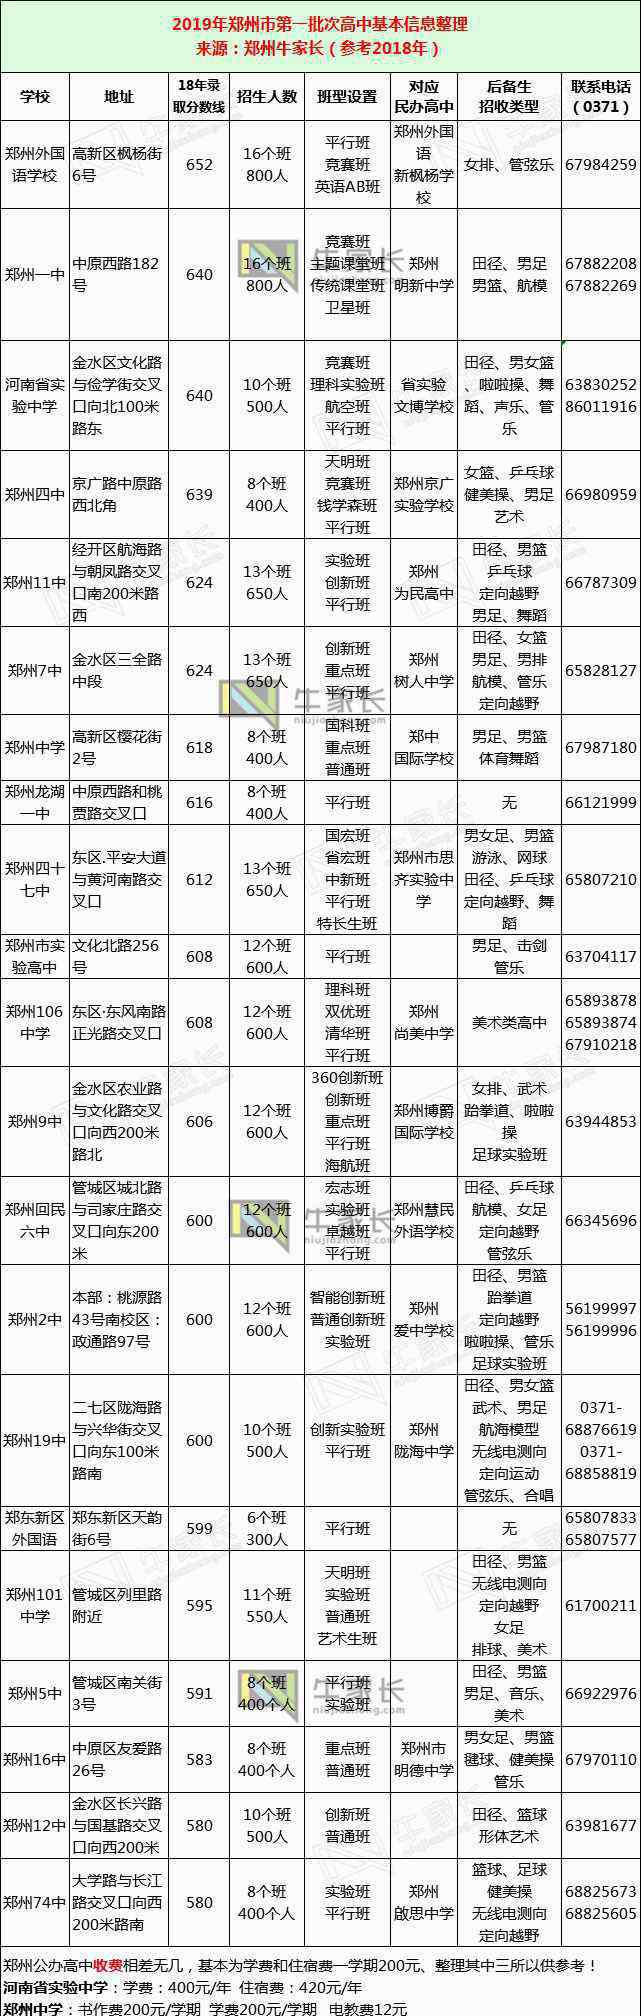 郑州市区图 重点！2019年郑州市区高中信息一栏，了解它们一张图就够了！